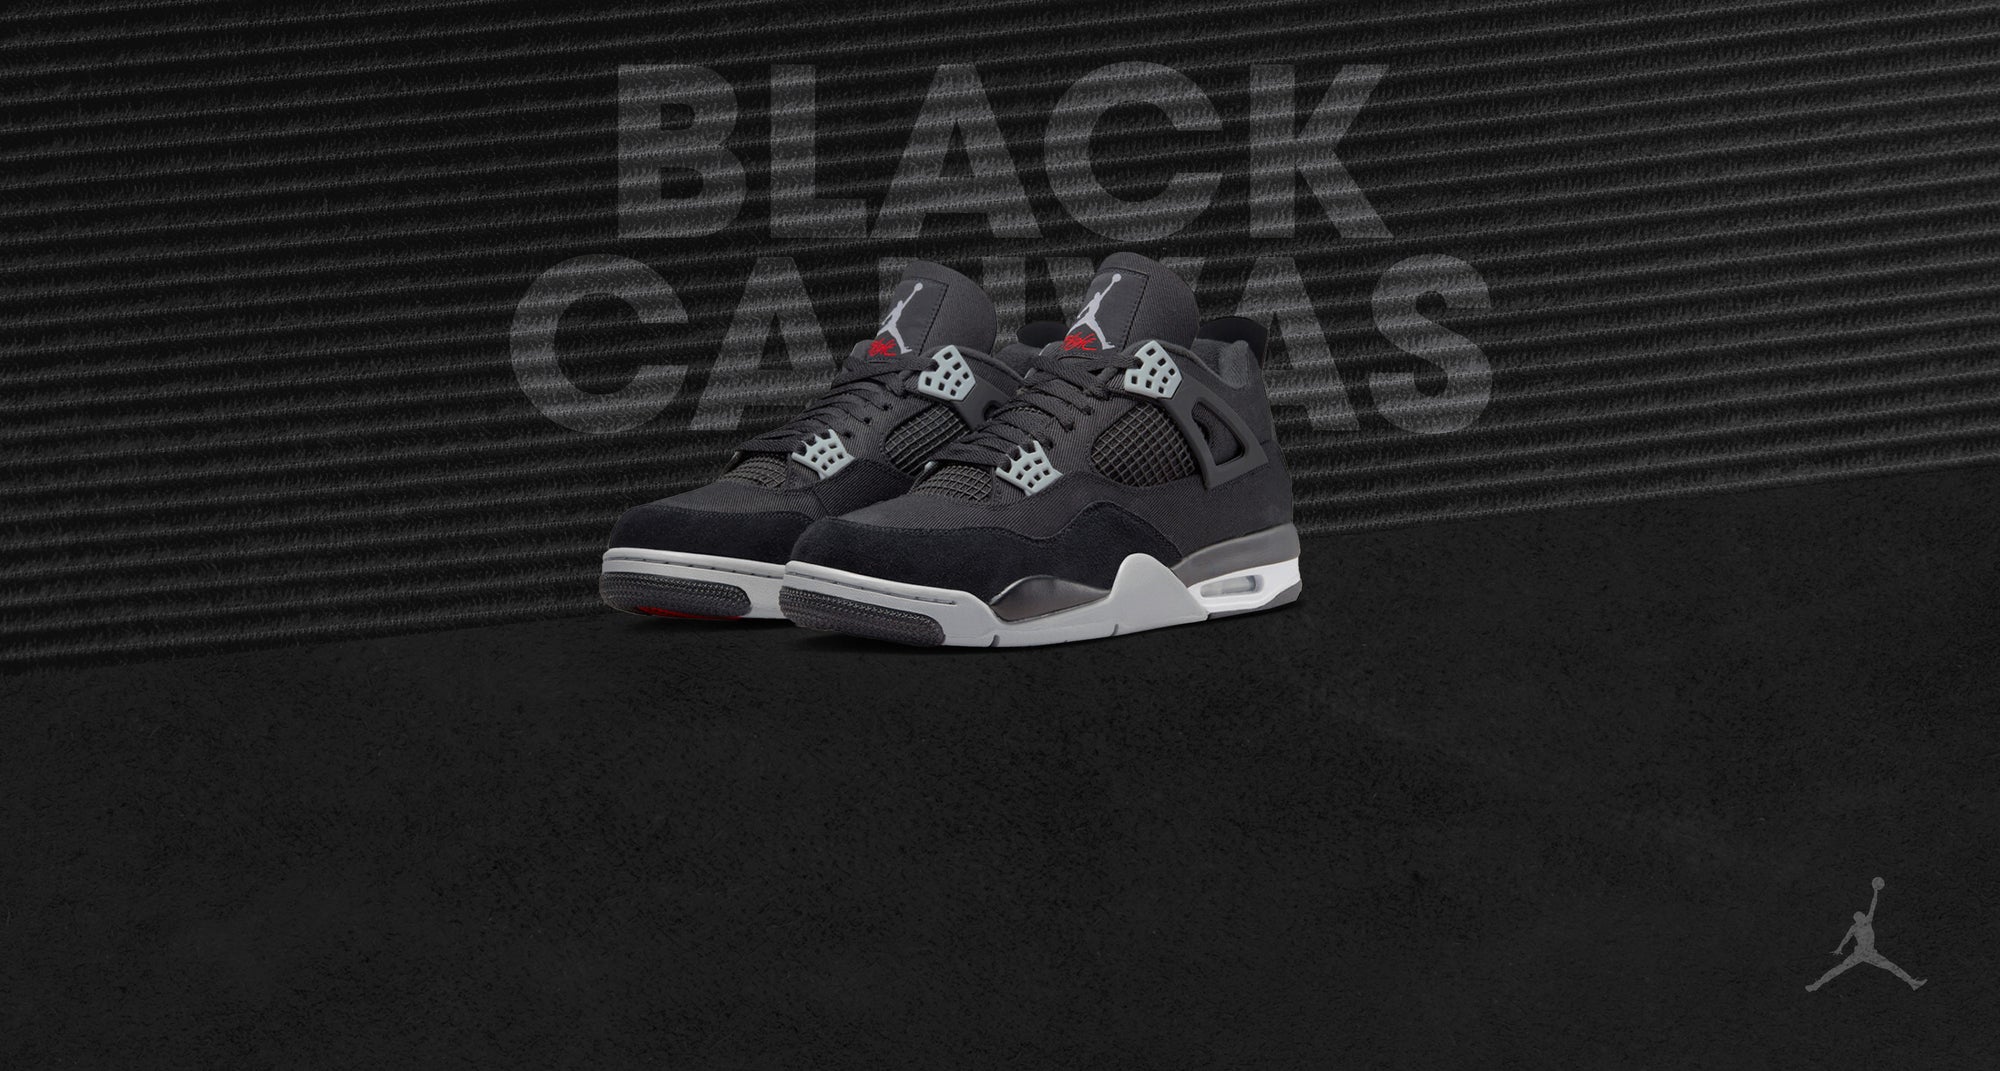 A Closer Look at the Air Jordan 4 'Black Canvas'